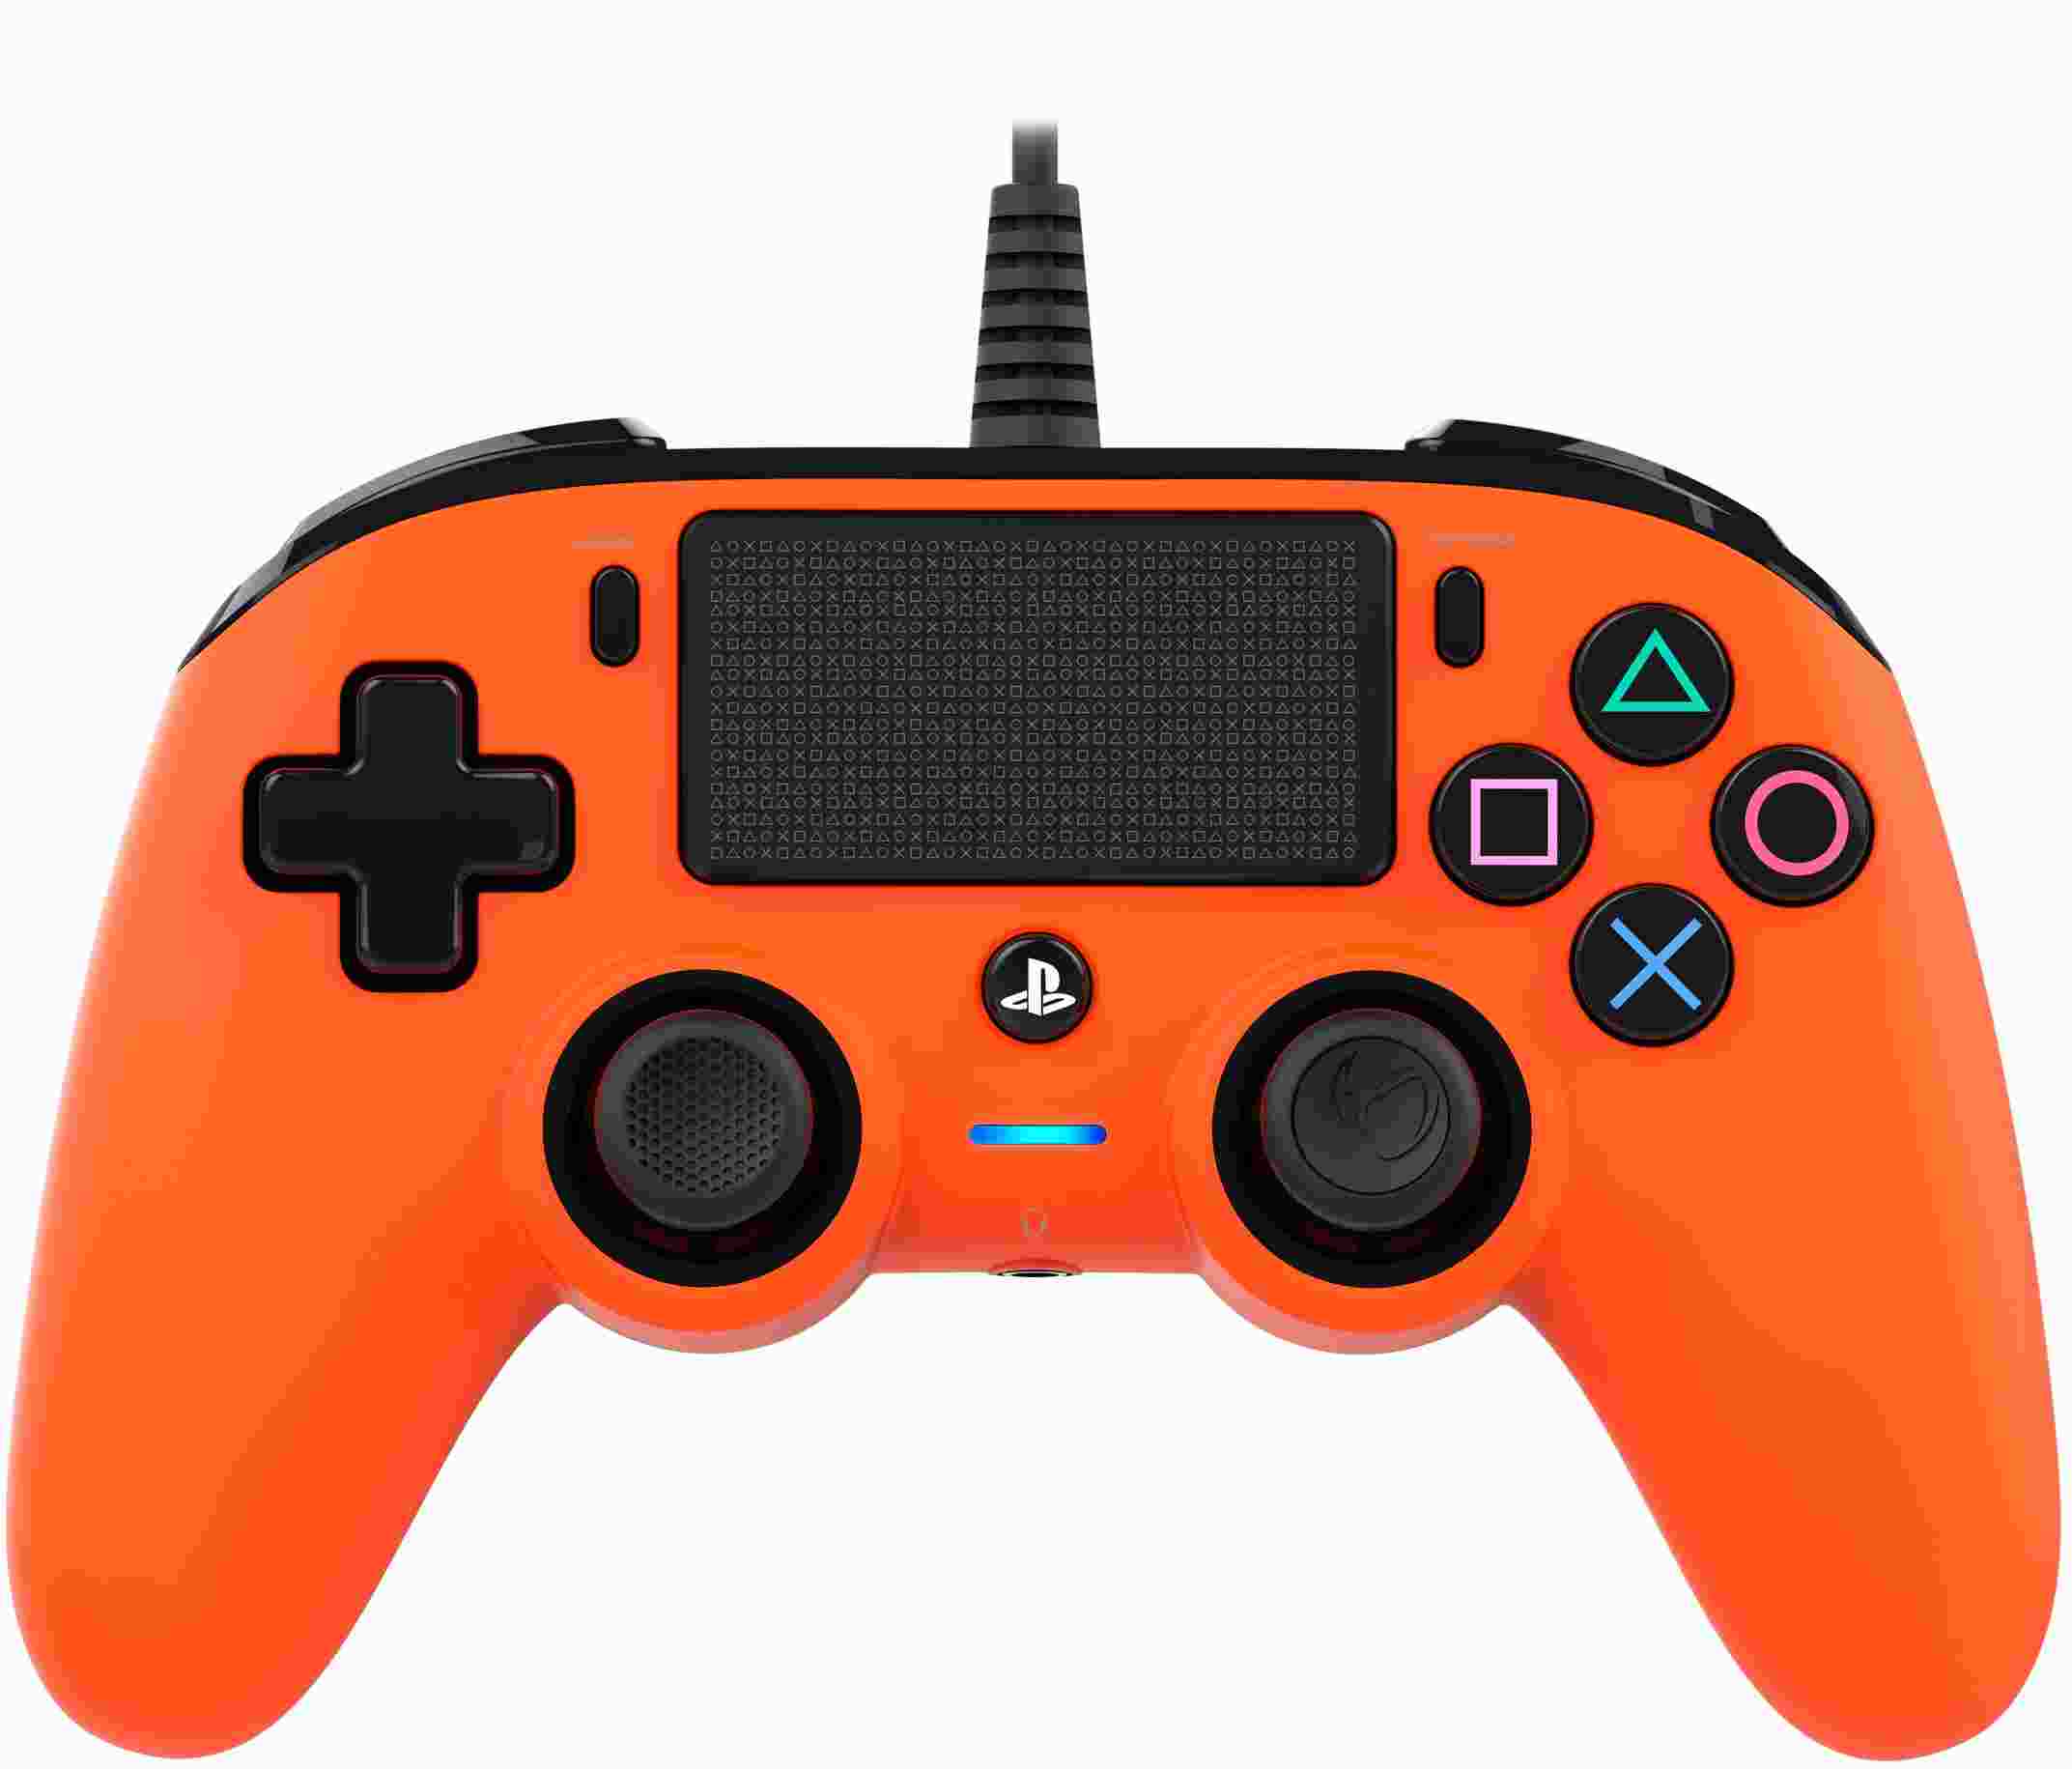 Nacon Wired Compact Controller - ovladač pro PlayStation 4 - oranžový1 